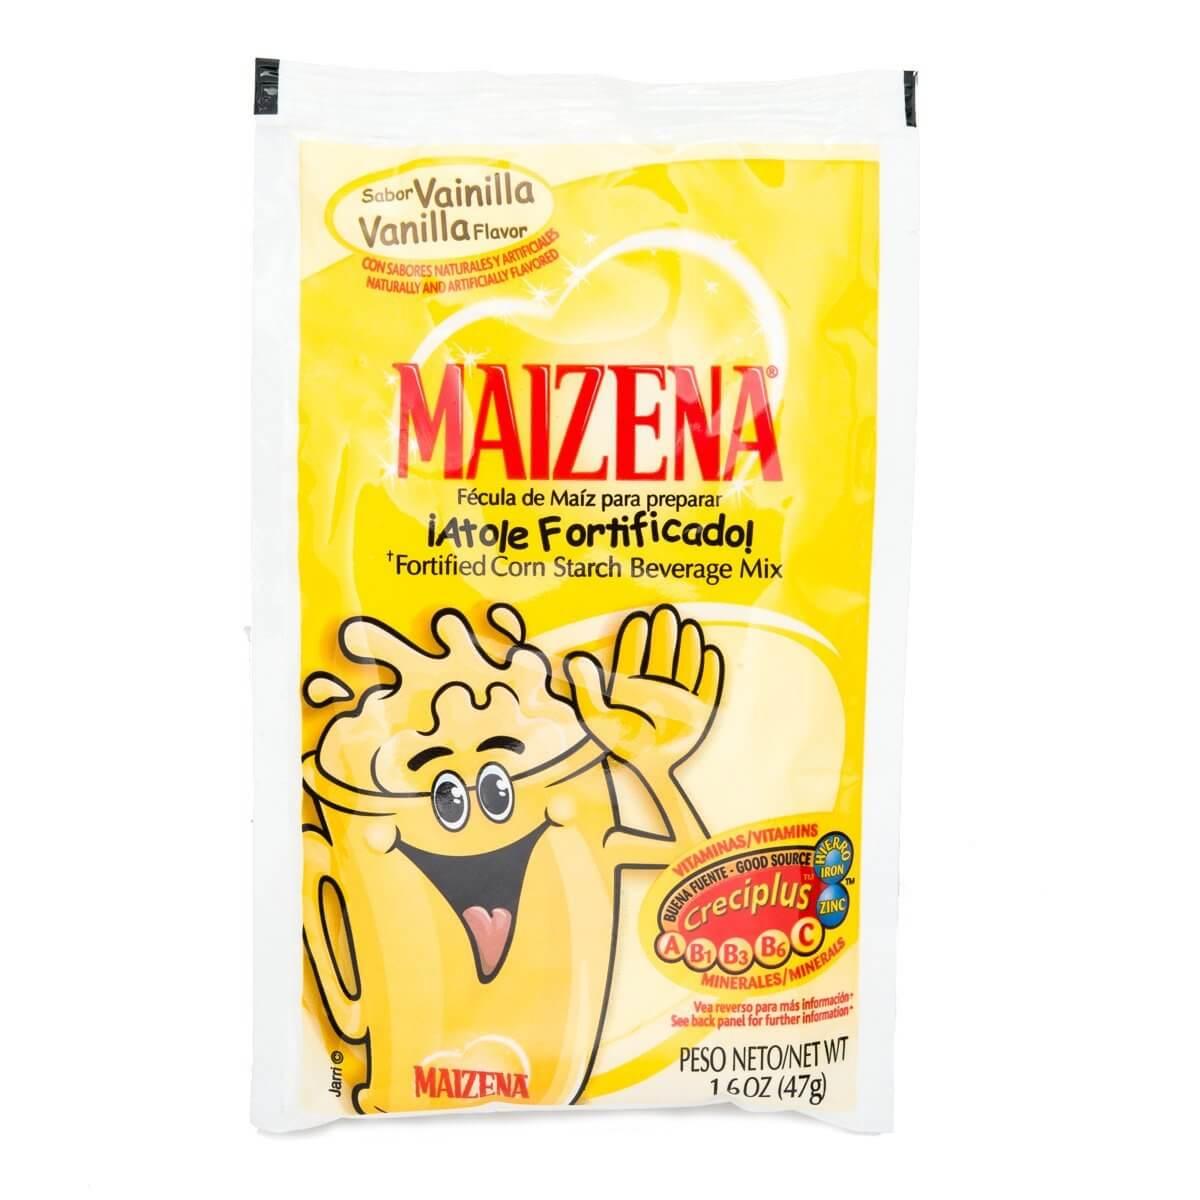 Maizena - Fortified Corn Starch Beverage Mix, Vanilla Flavor 1.6 oz